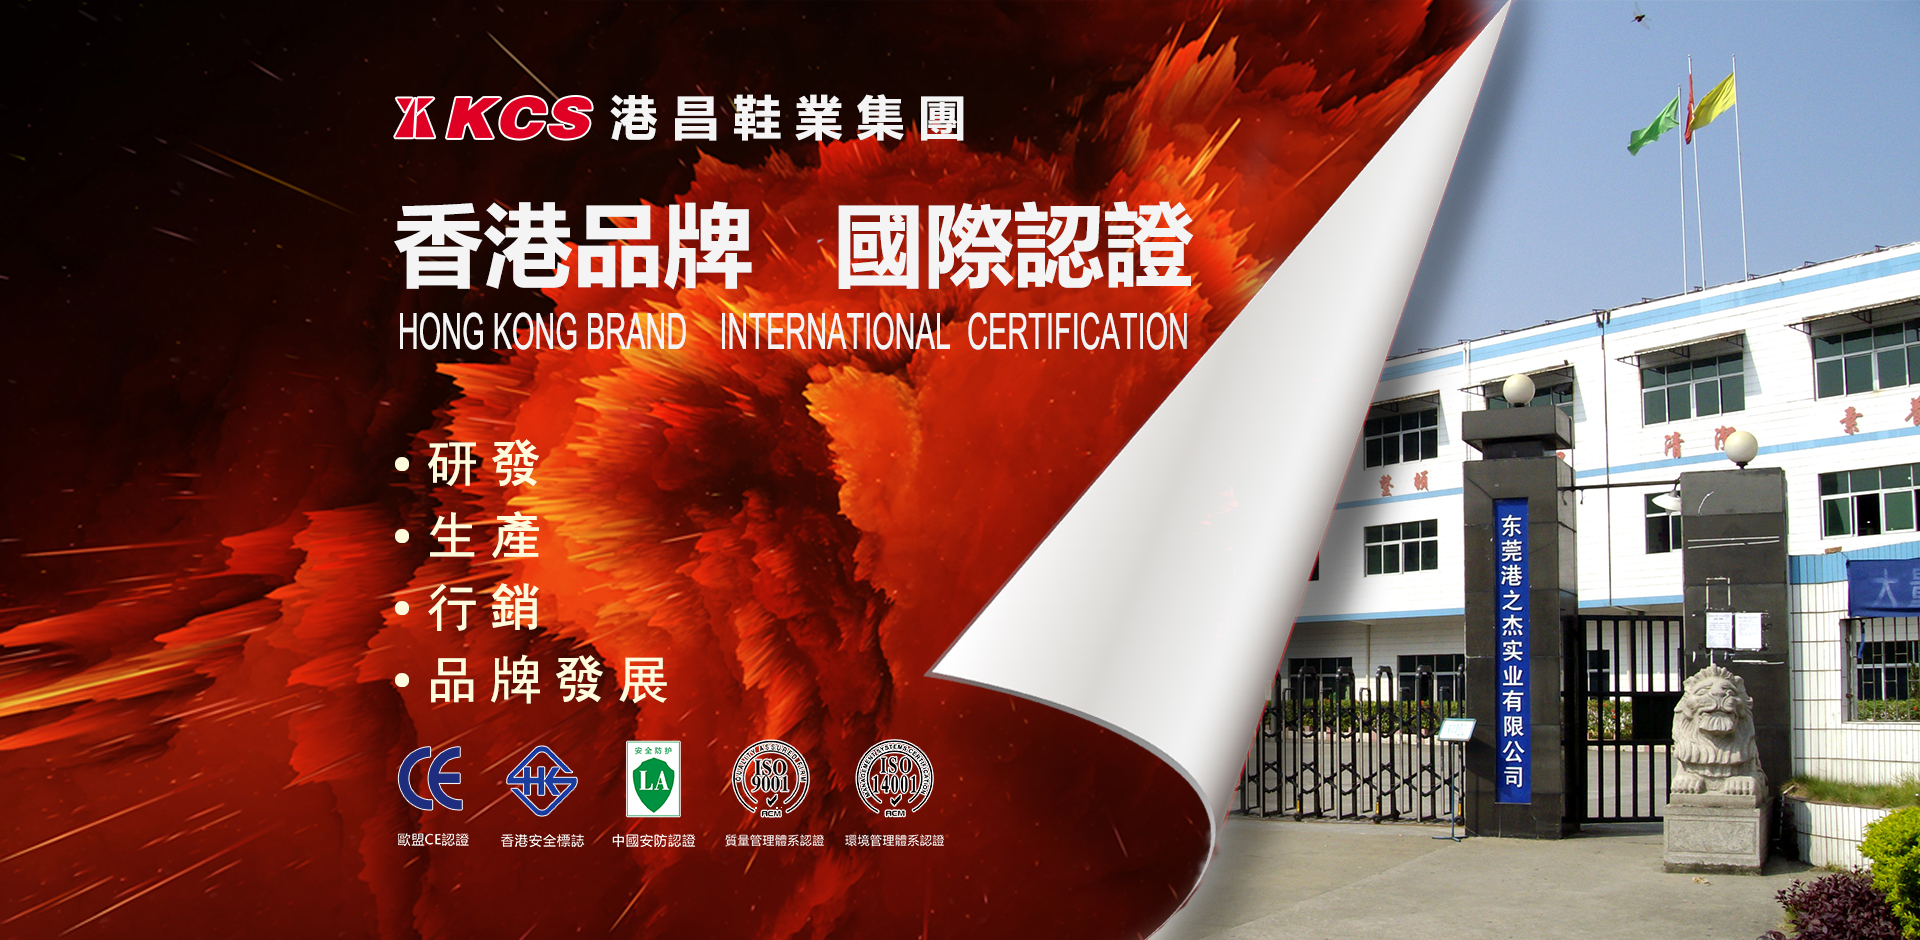 香港品牌國際認證